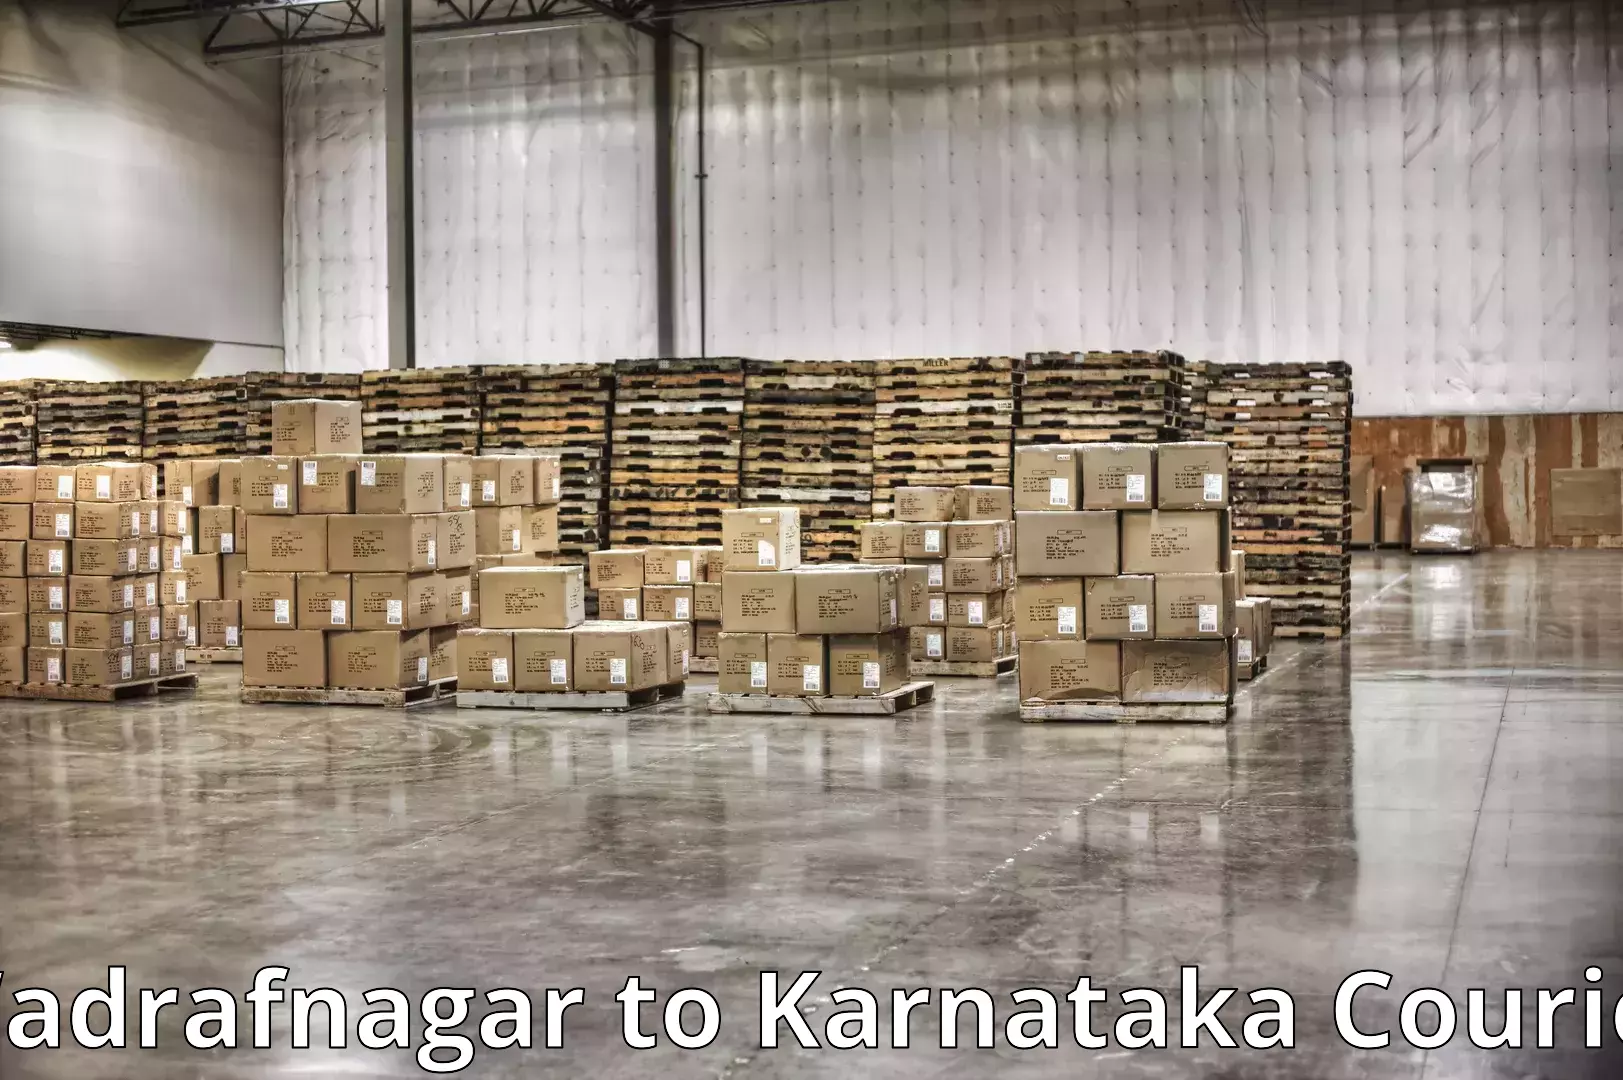 Professional packing and transport Wadrafnagar to Dandeli